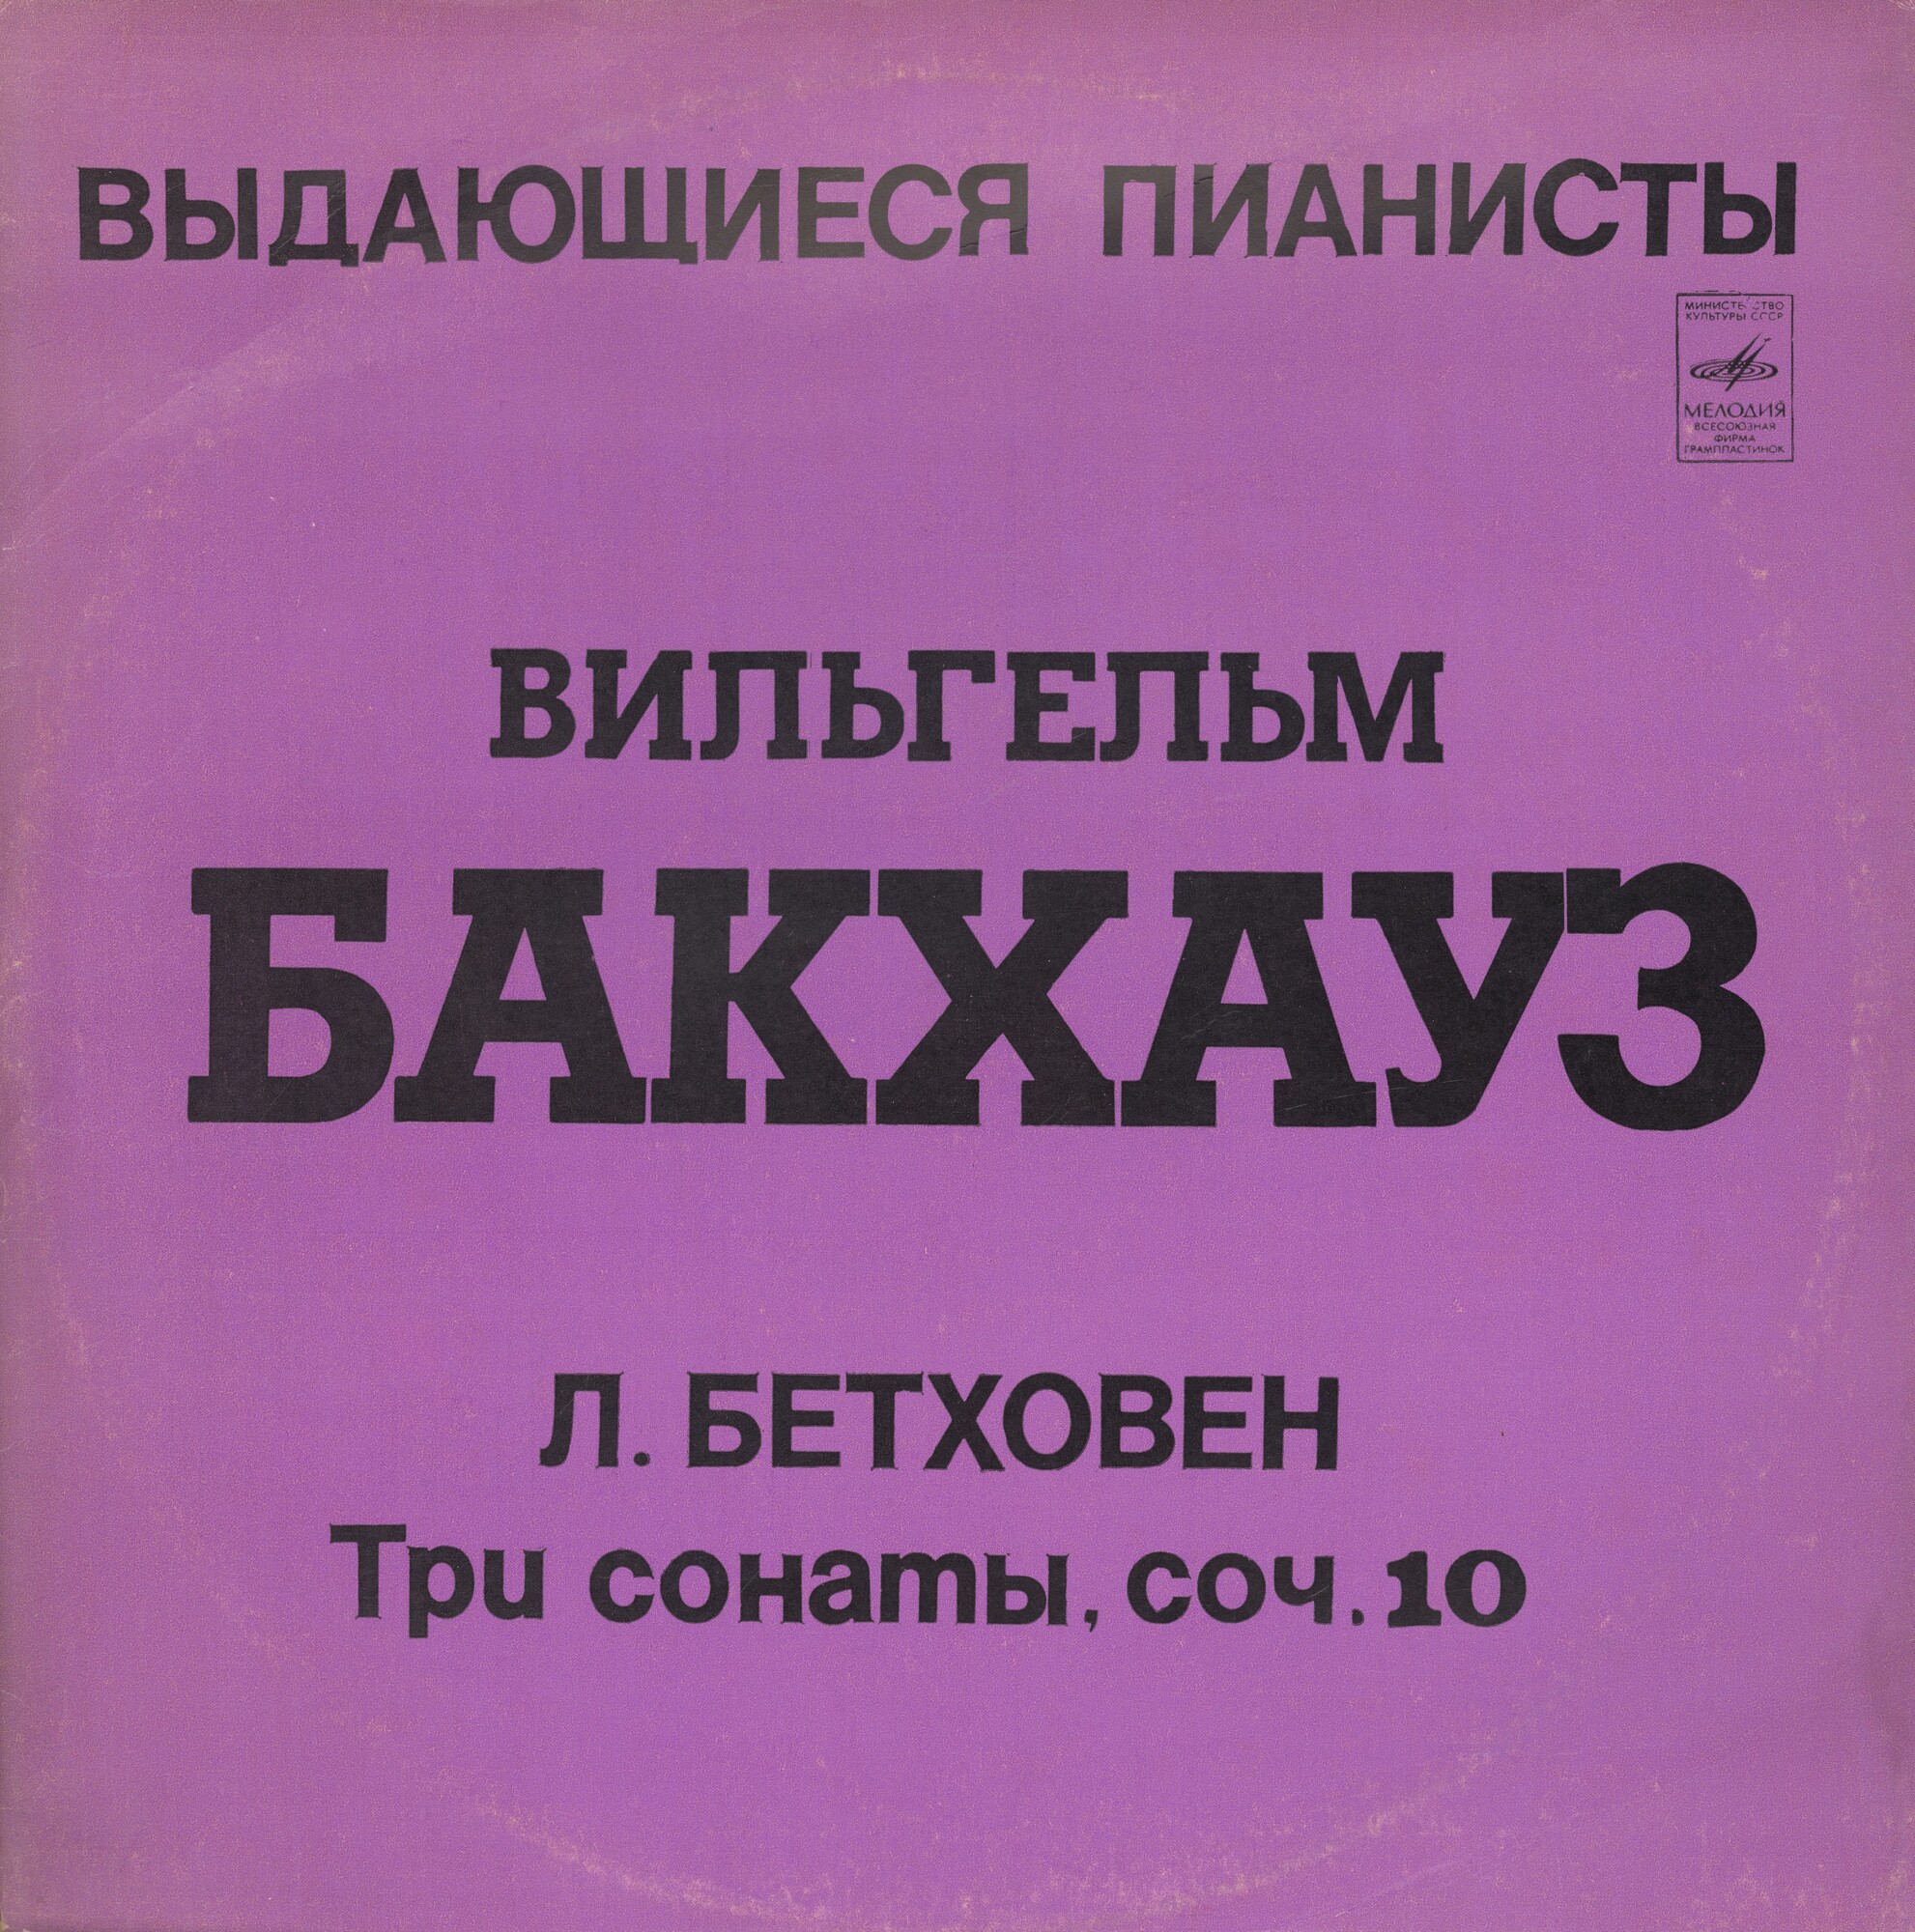 Выдающиеся пианисты. Вильгельм Бакхауз - Л. Бетховен "Три сонаты, соч. 10"